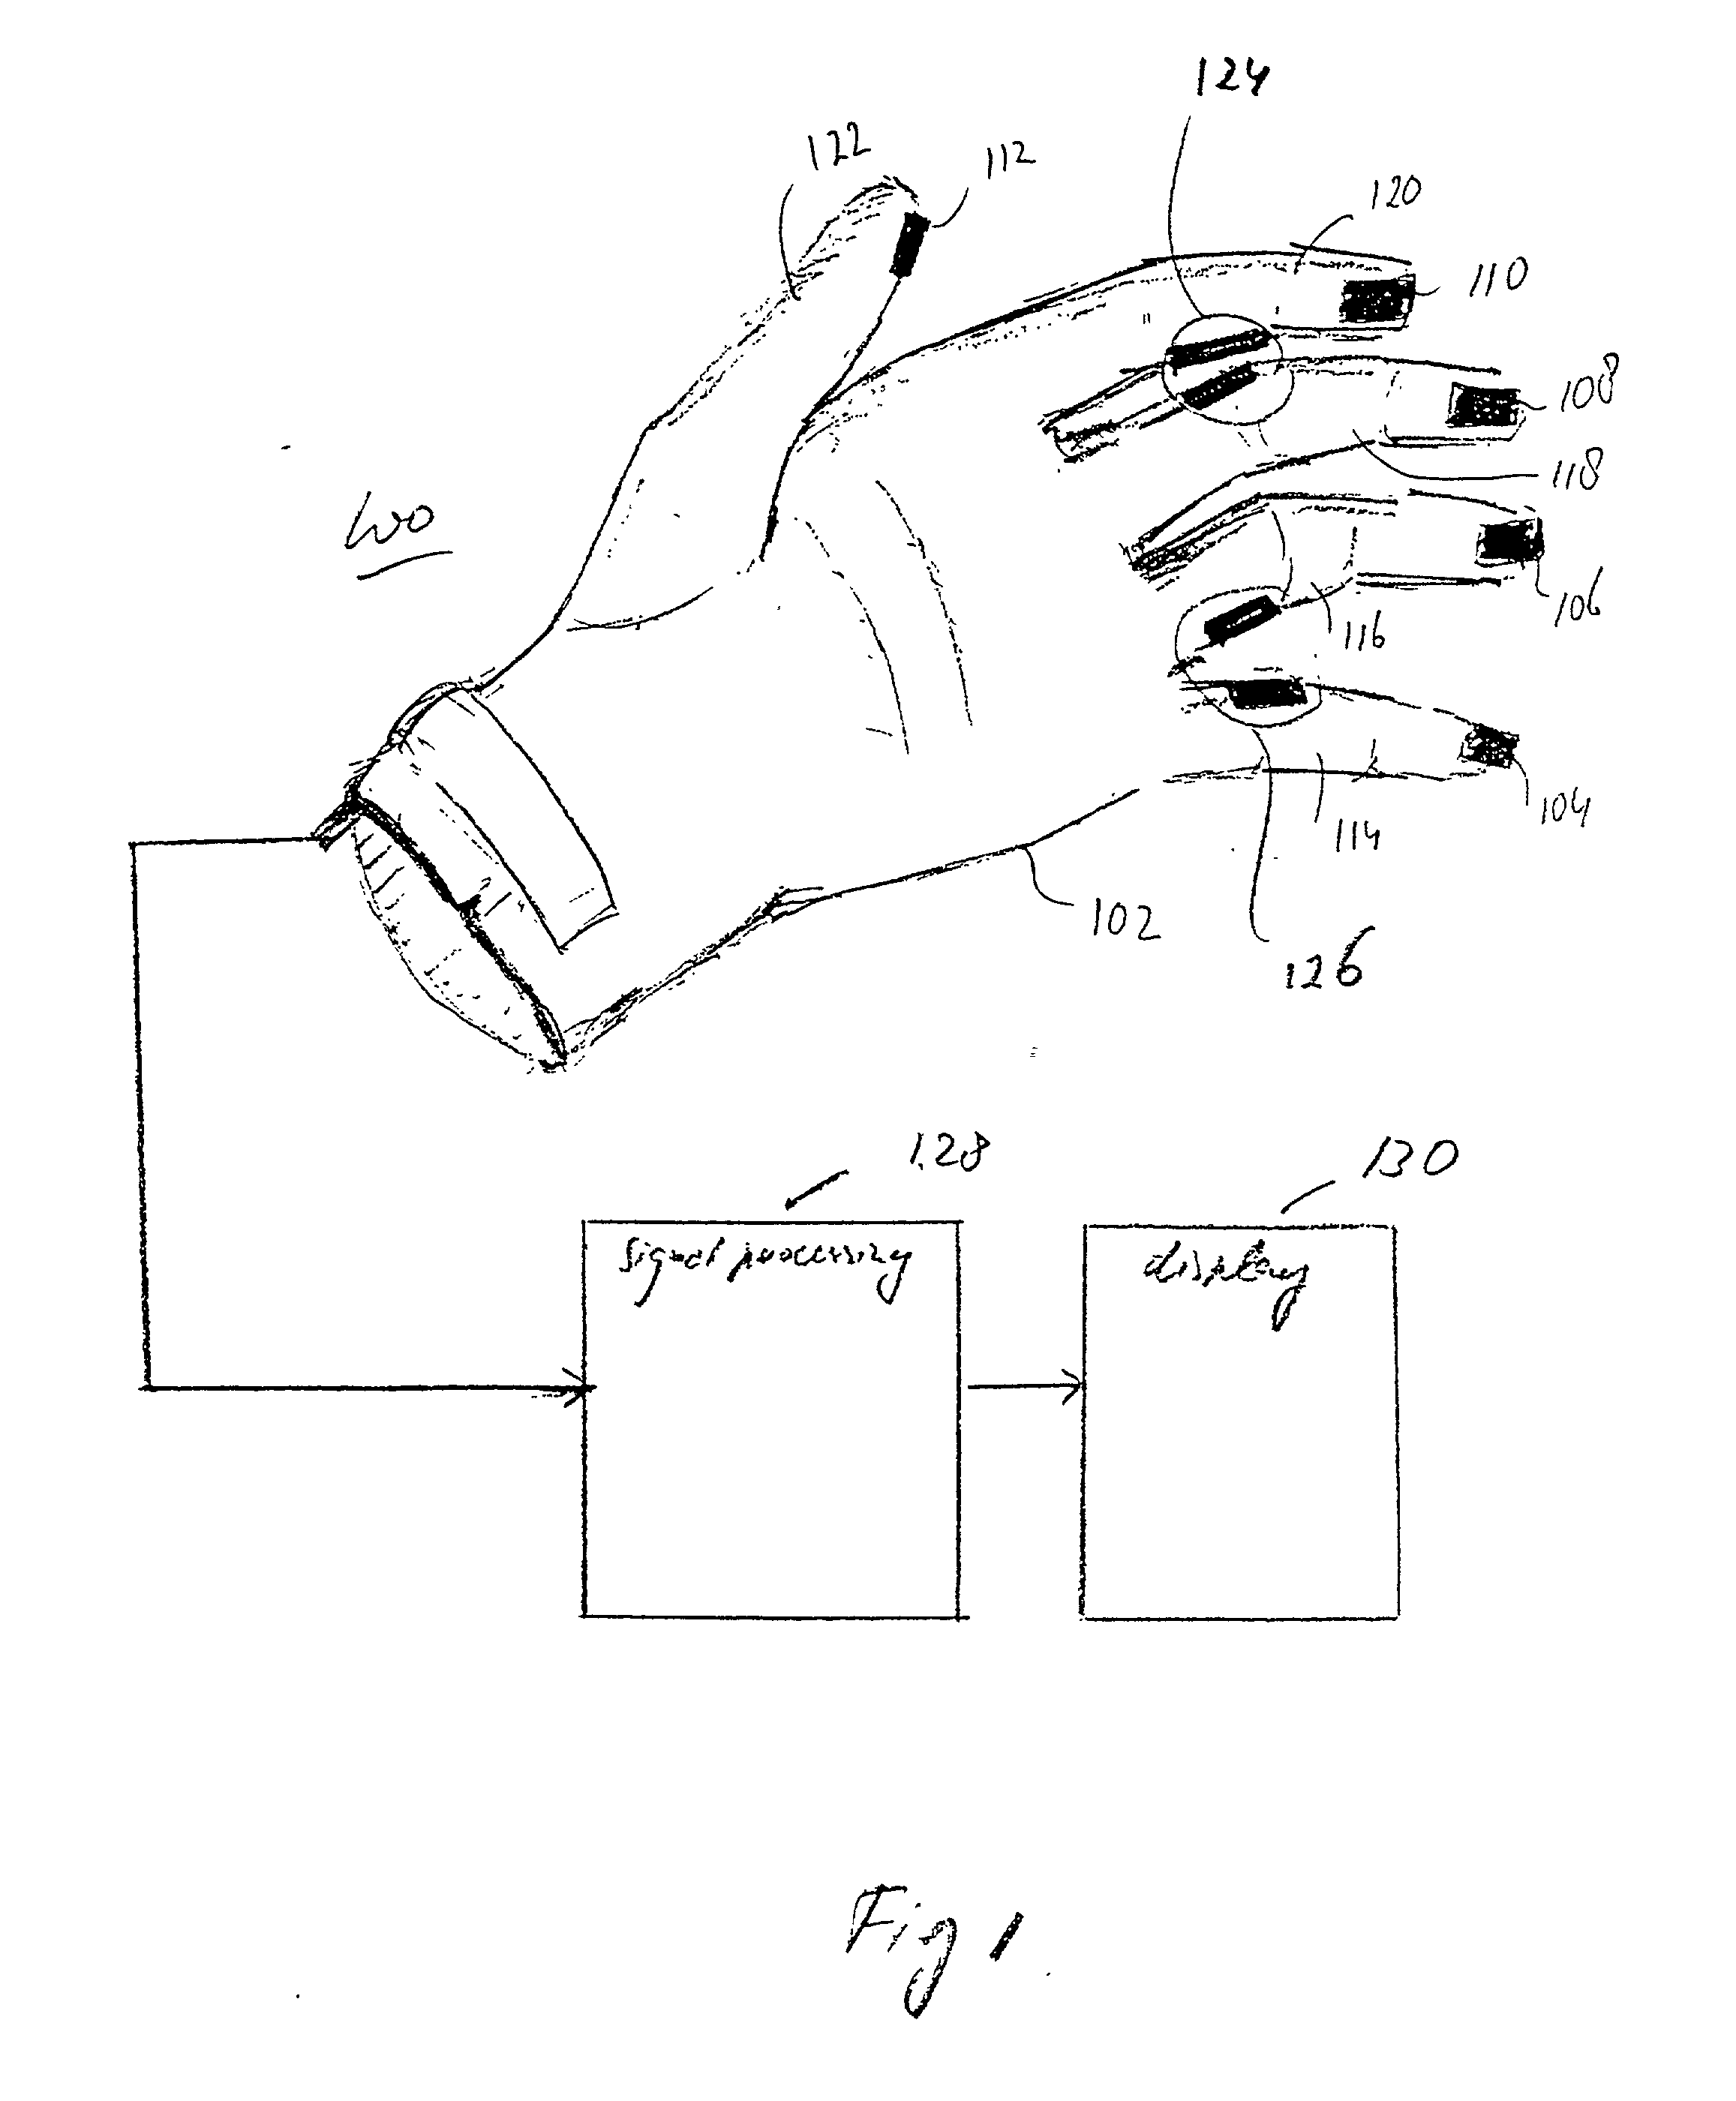 Multiple pressure sensors per finger of glove for virtual full typing